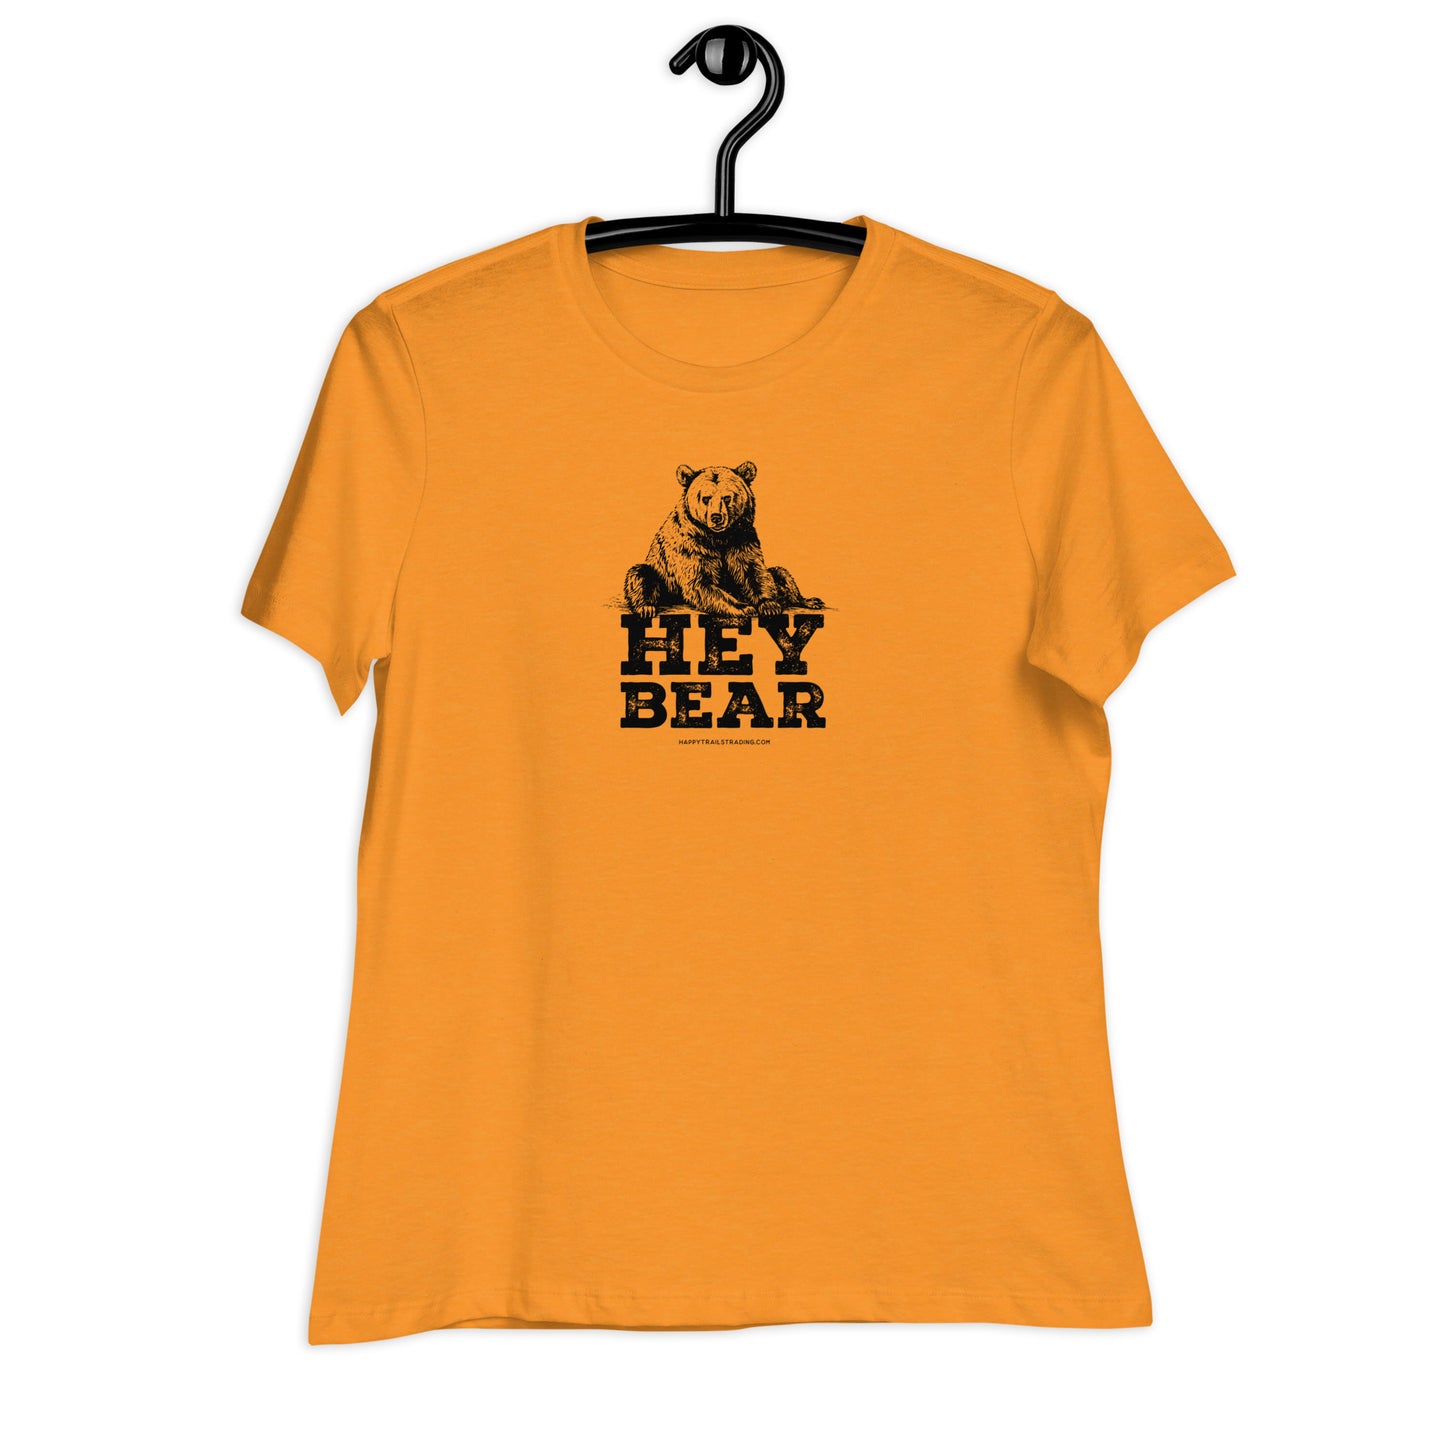 Hey Bear - Women's Relaxed T-Shirt